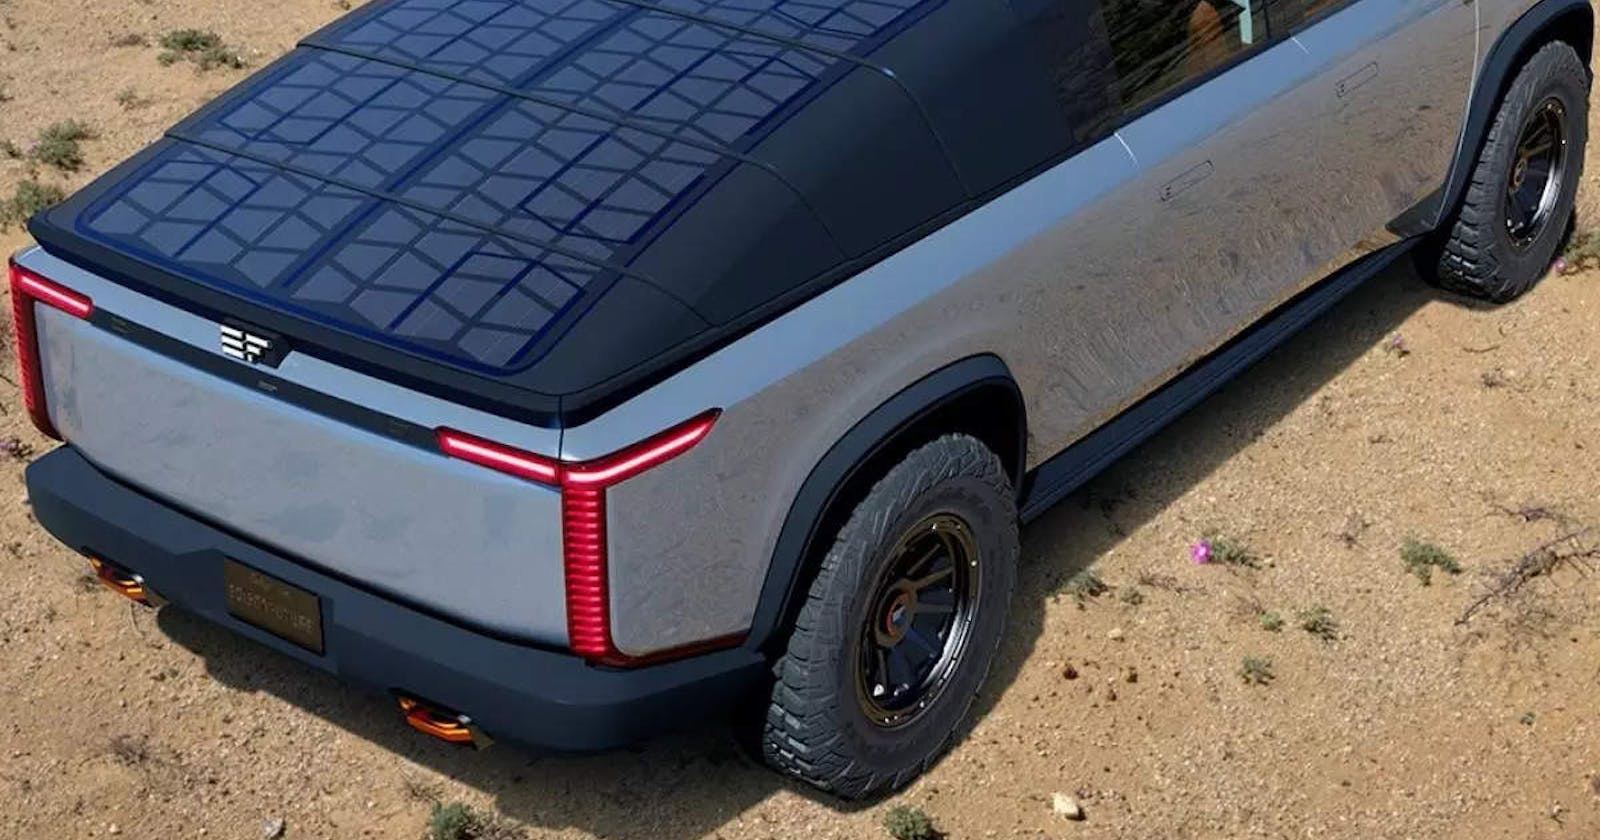 Tesla's New Solar Panels Design for Charging EVs: A Potential Revolution in Transportation